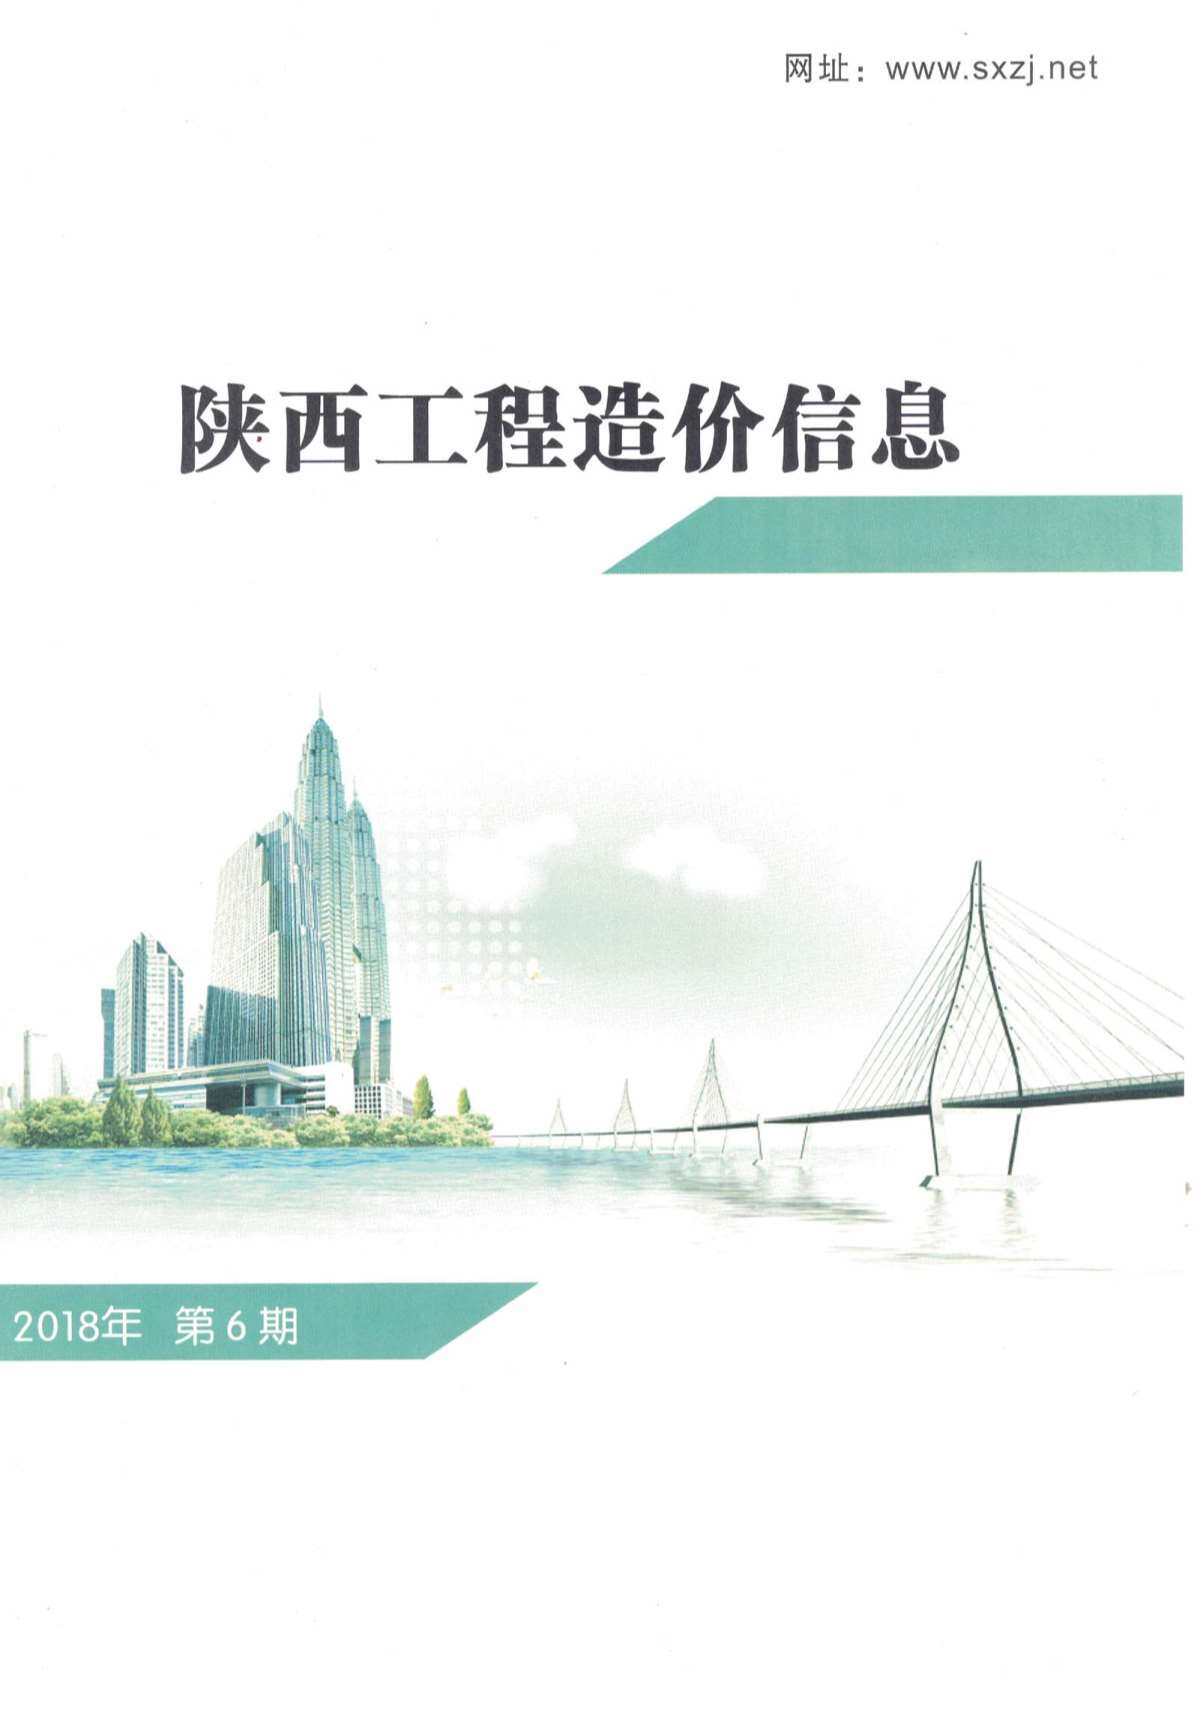 陕西省2018年6月工程造价信息期刊